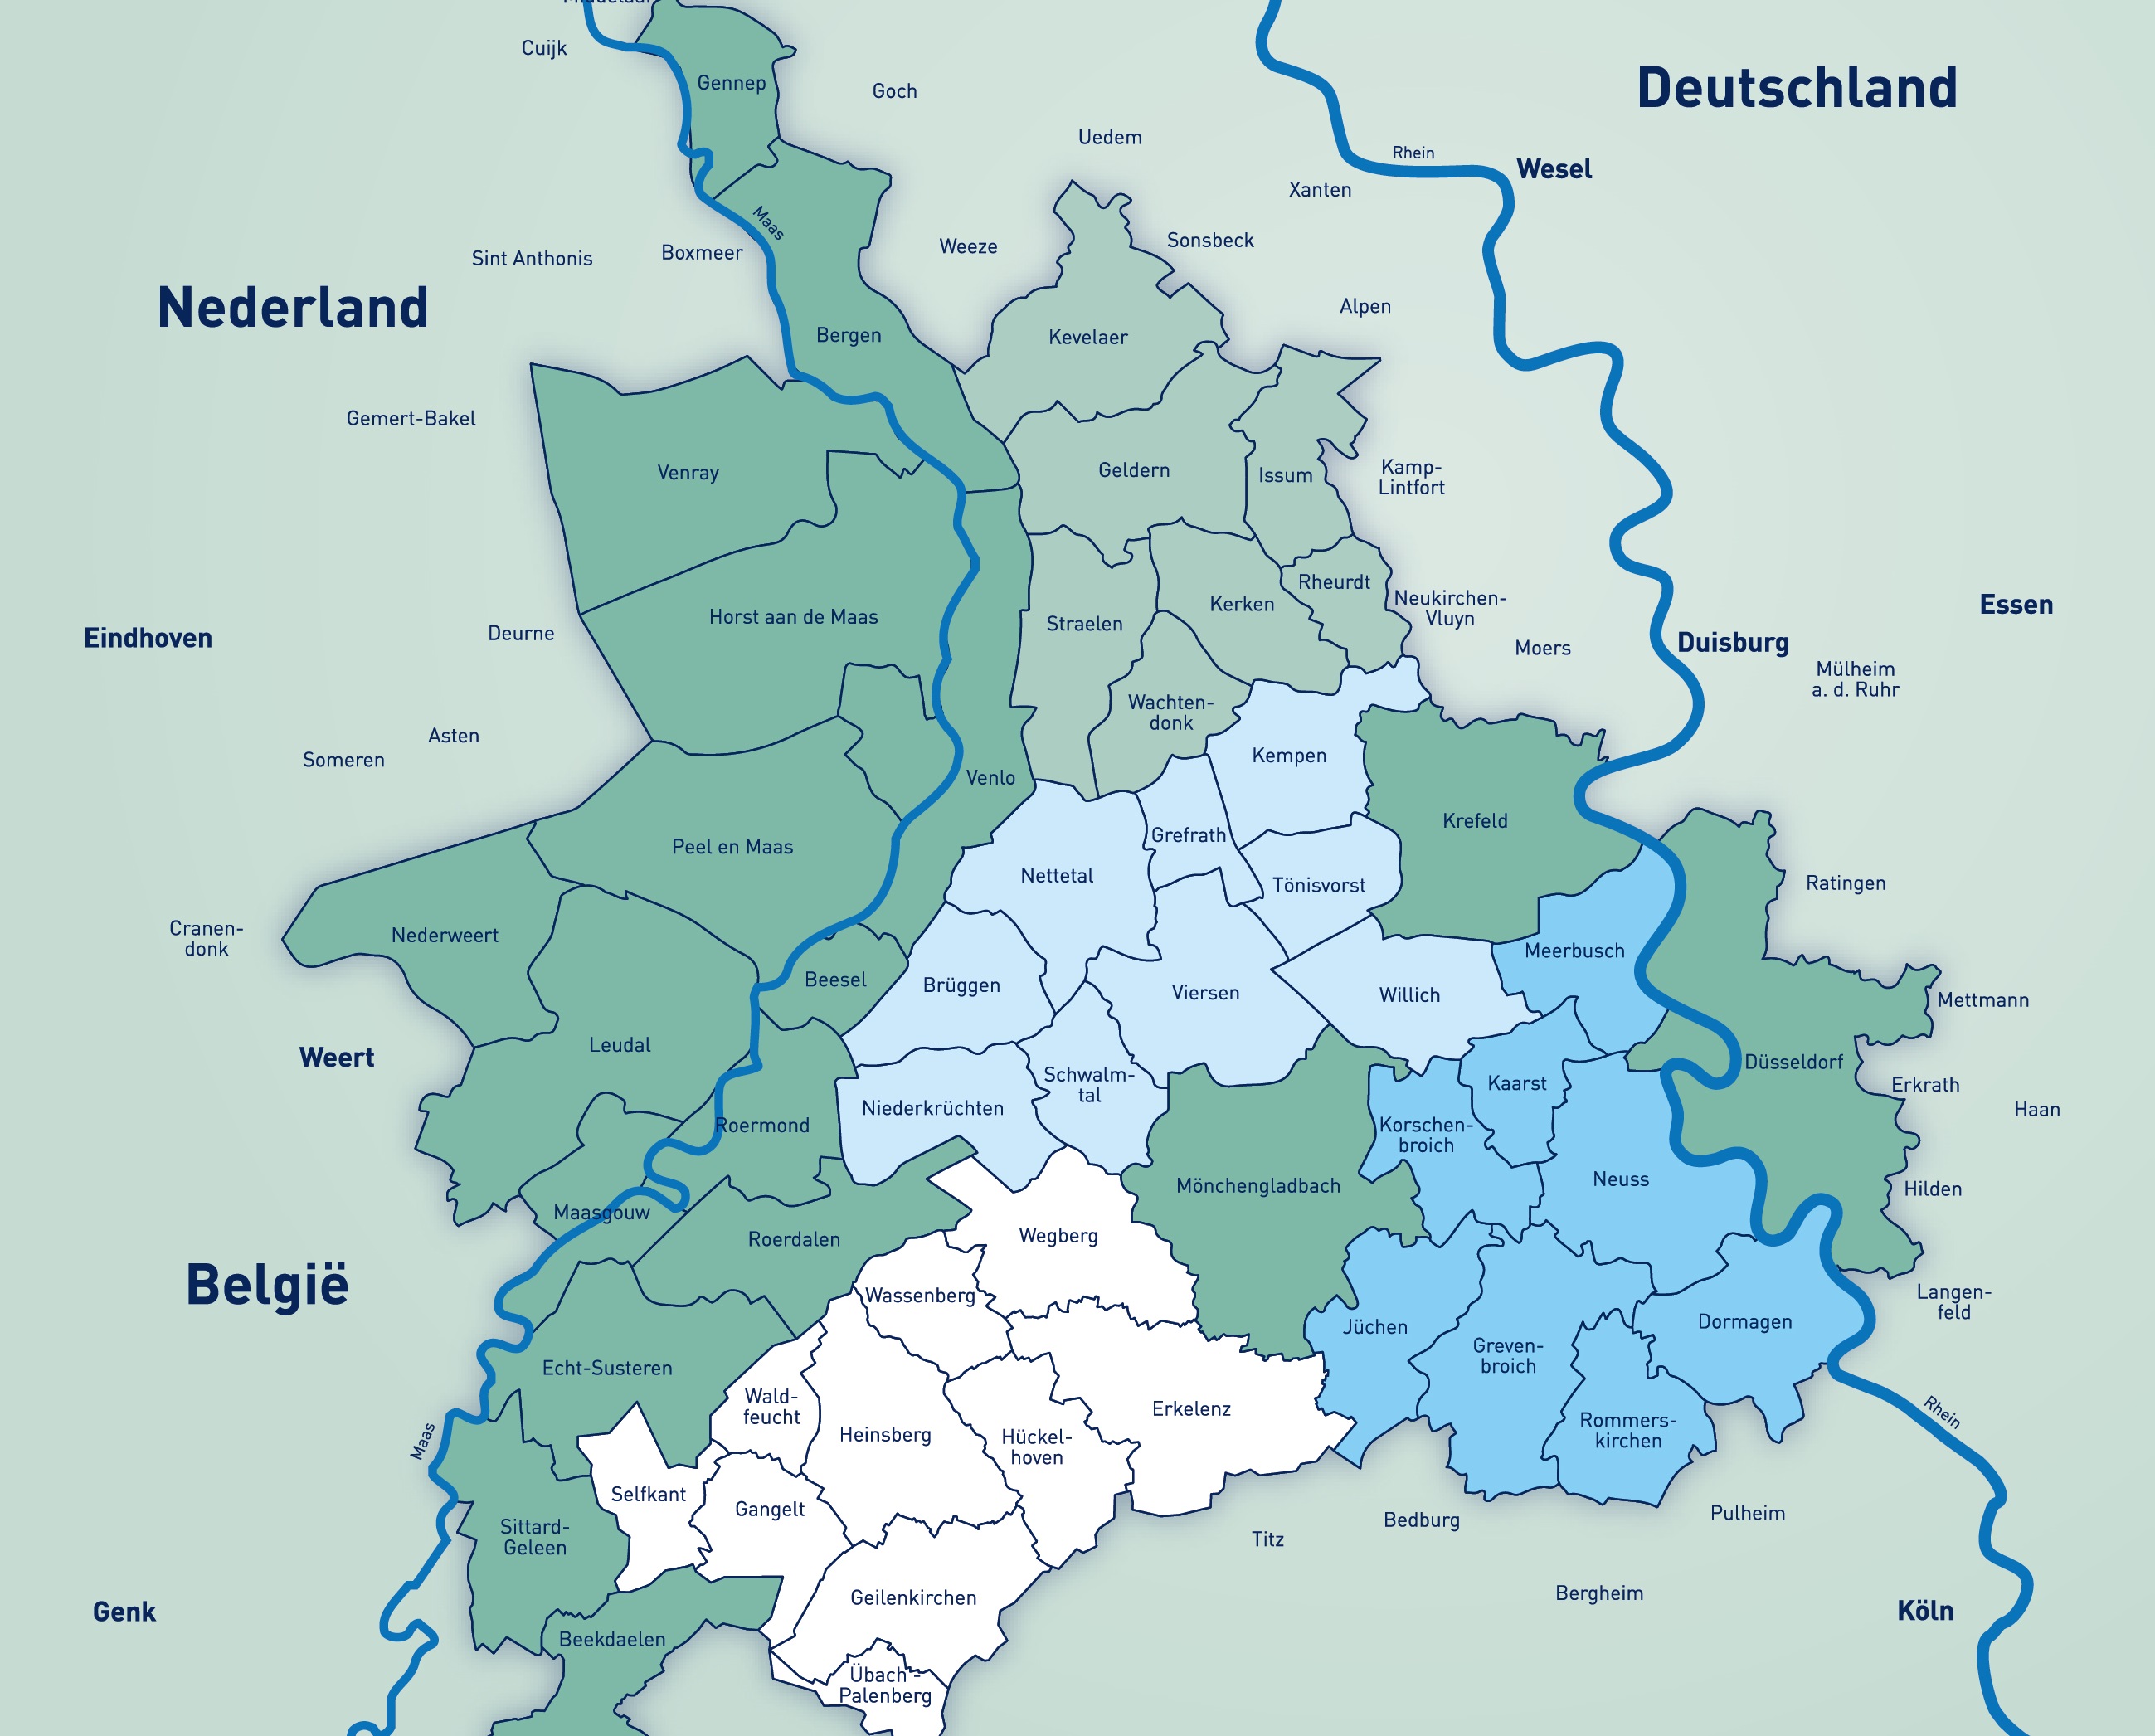 Kreis Heinsberg, Sittard-Geleen en Beekdaelen worden lid van euregio rijn-maas-noord